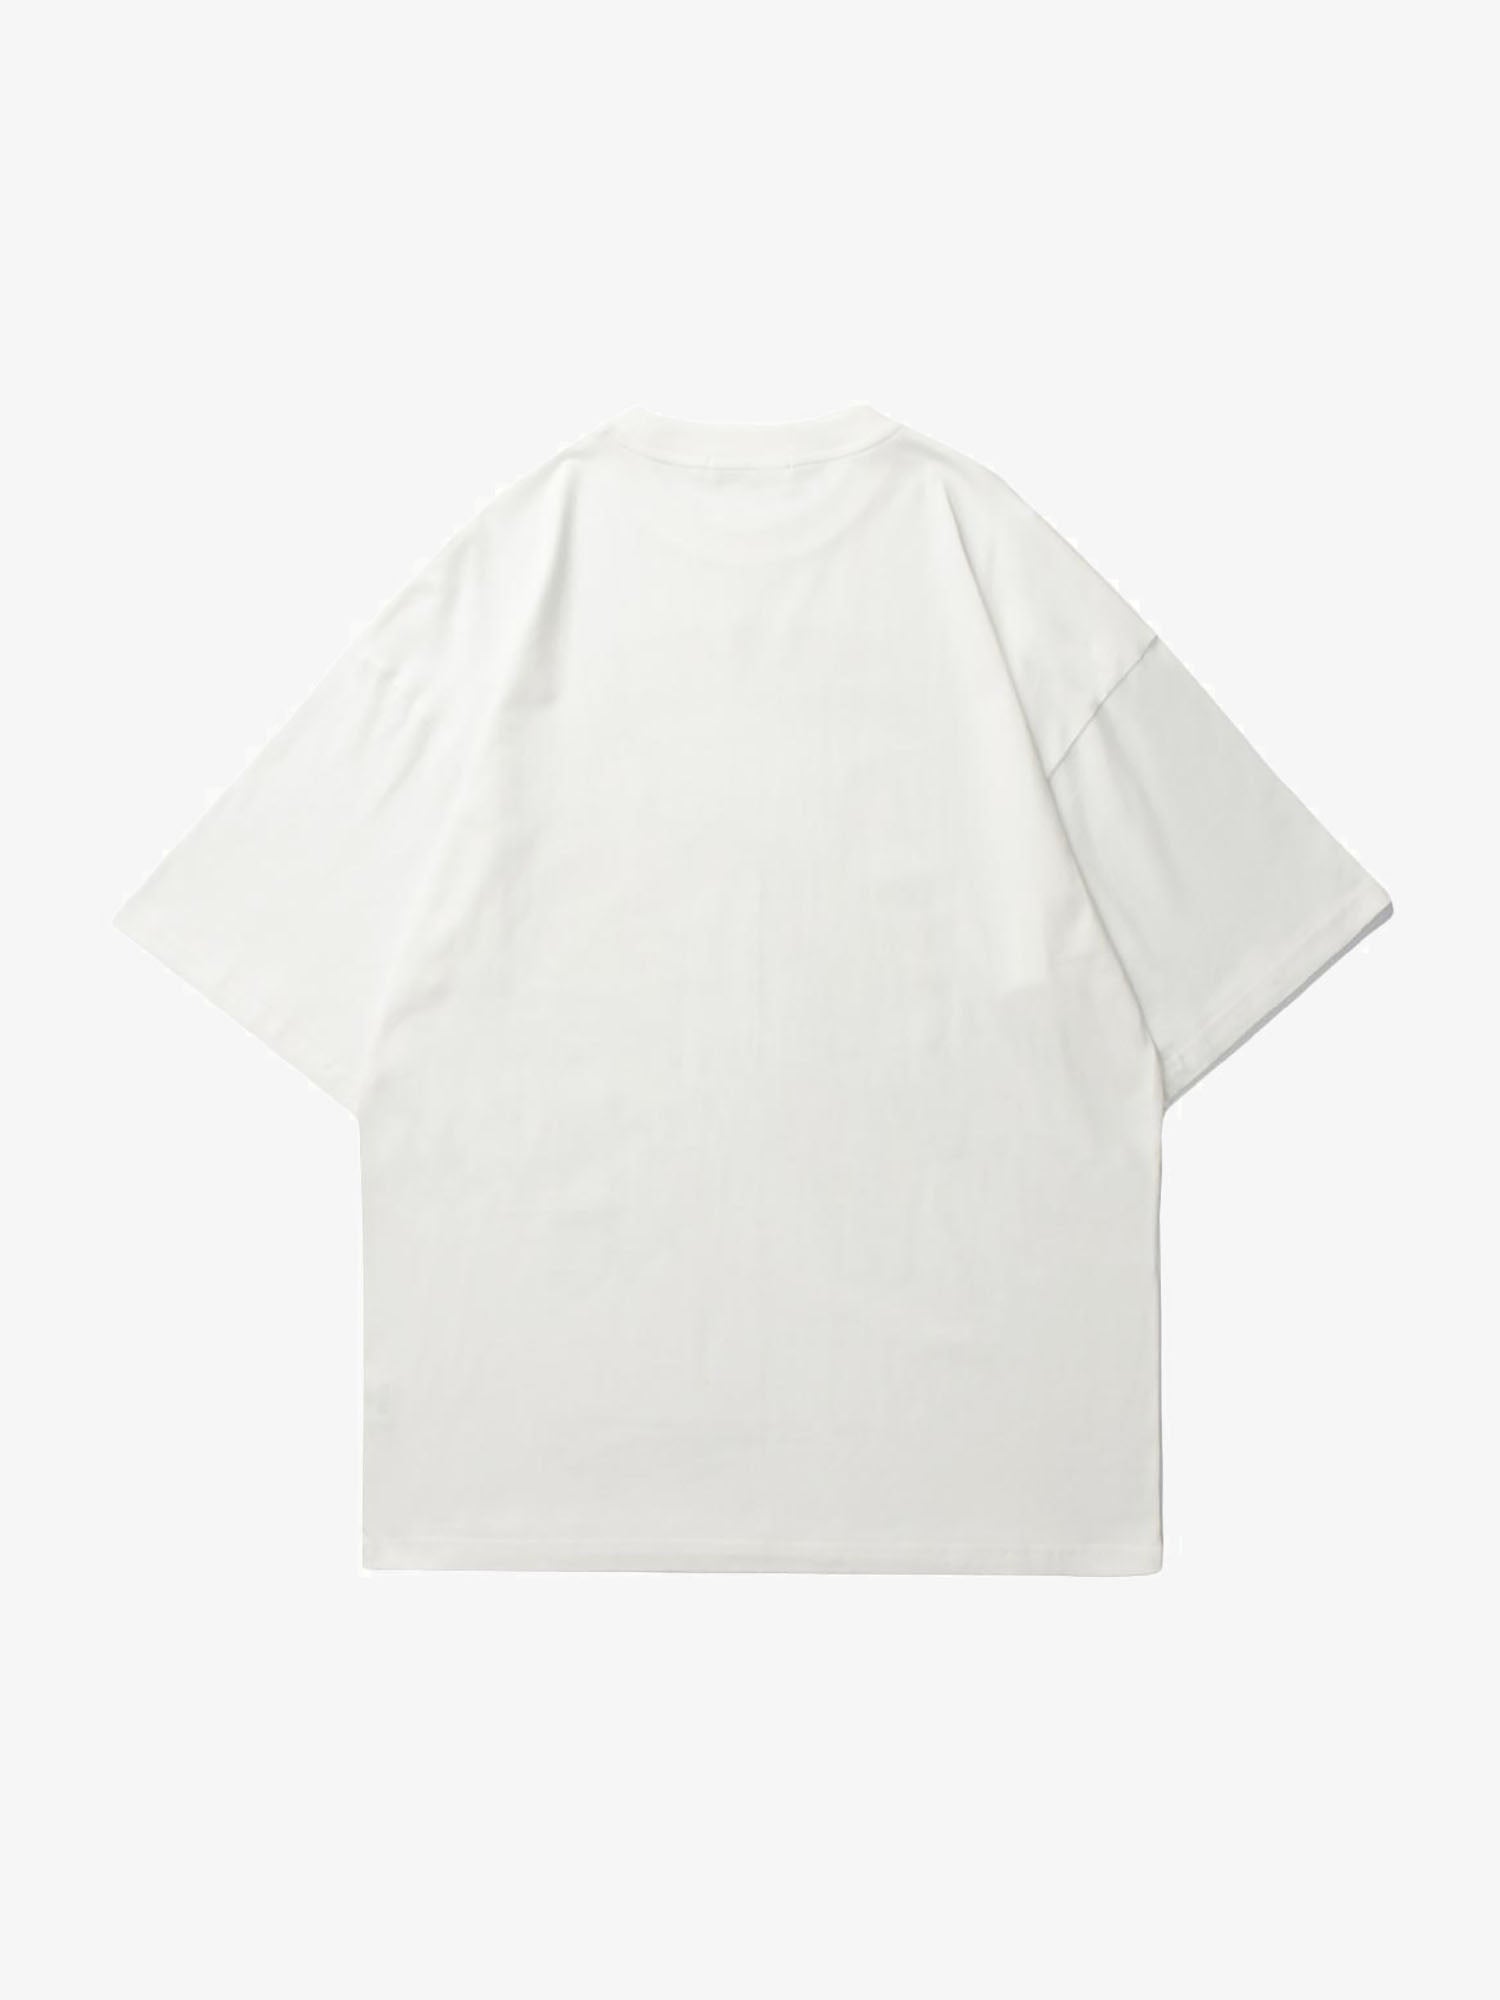 Justnotag corps humain T-shirt à manches courtes imprimé par induction thermique